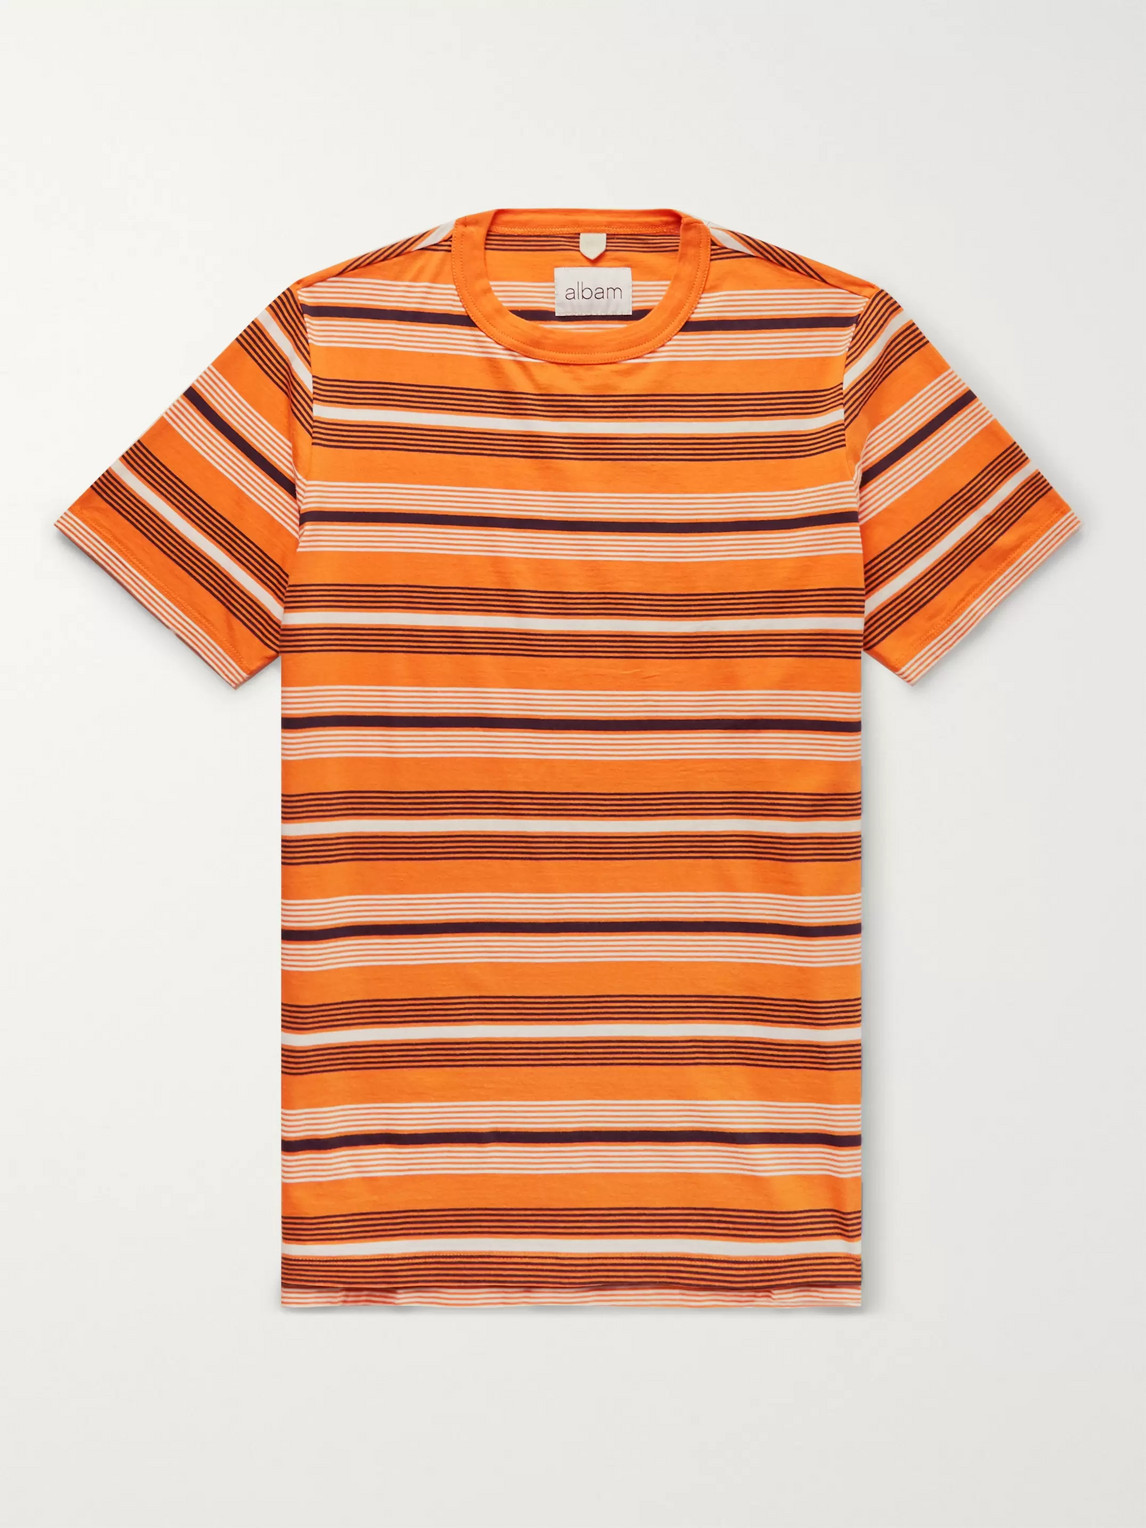 Albam Striped Cotton-jersey T-shirt In Orange